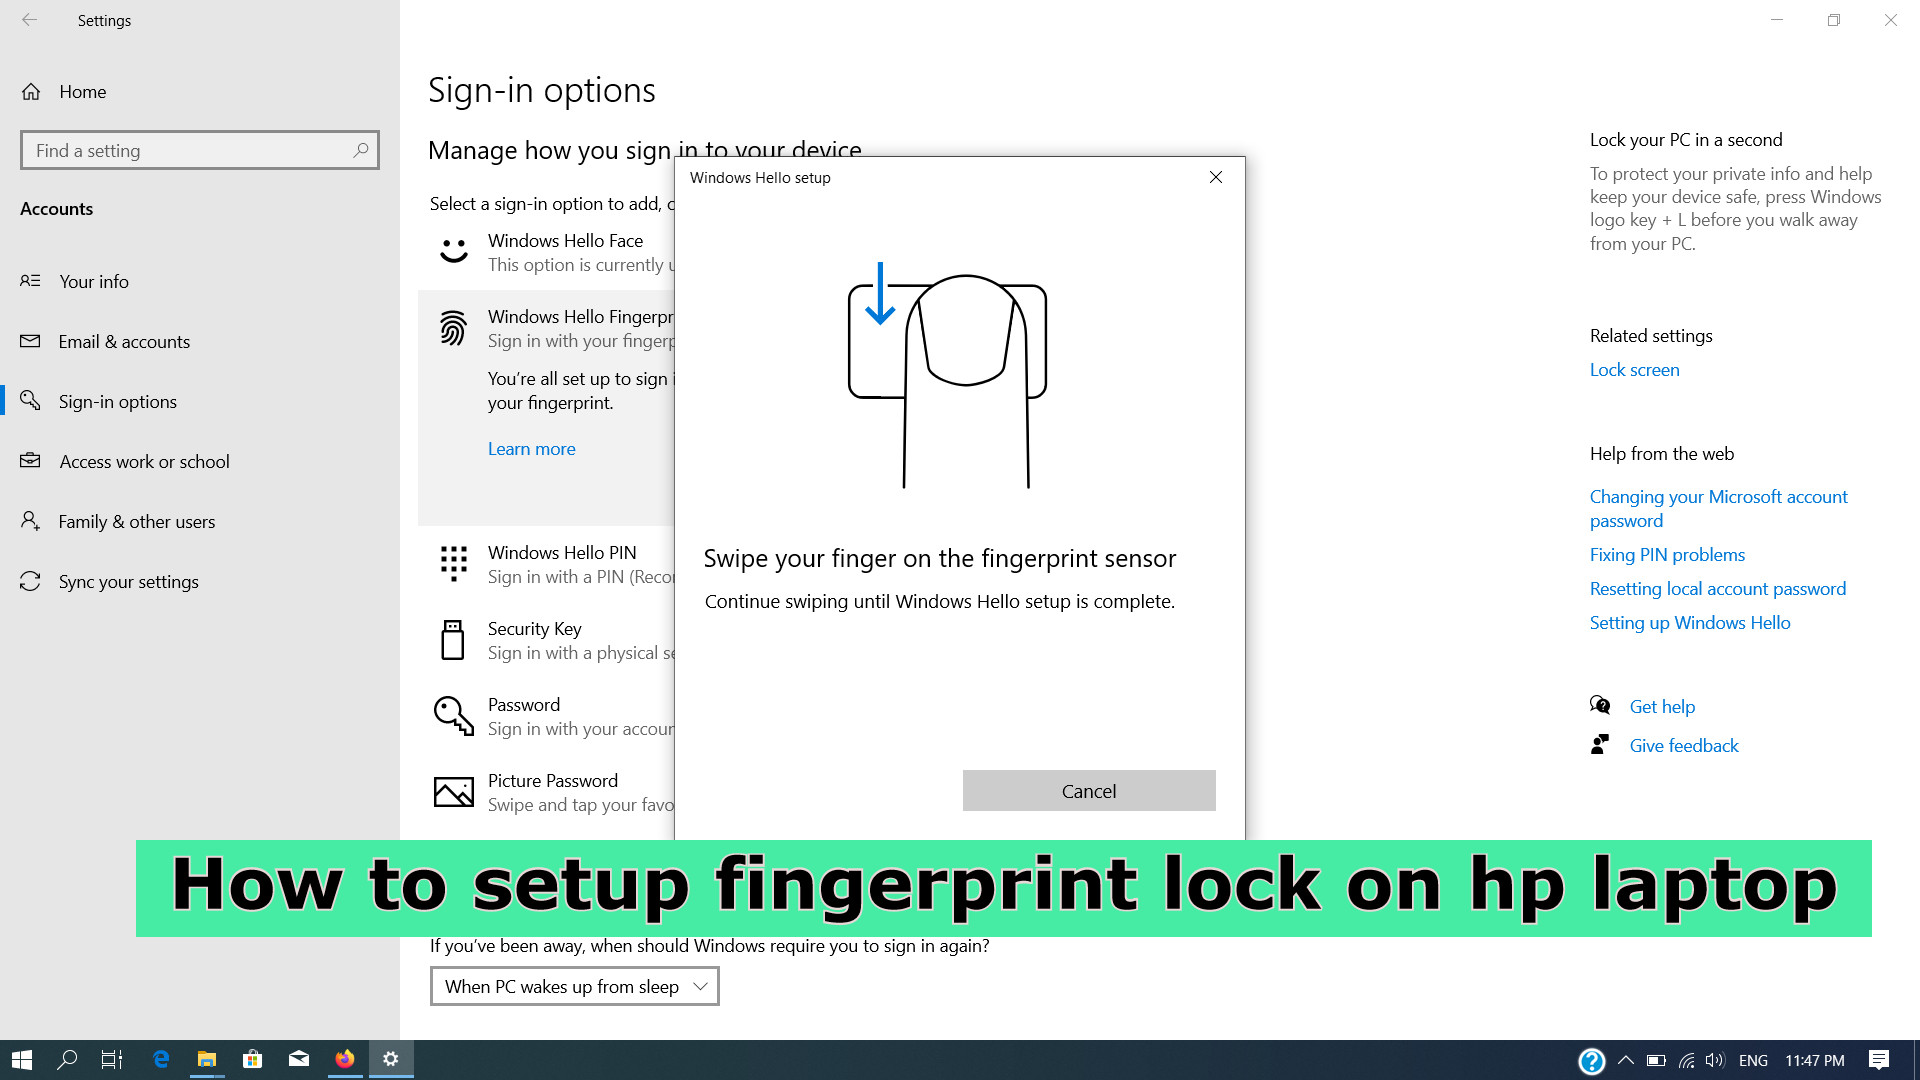 How to setup fingerprint lock on hp laptop